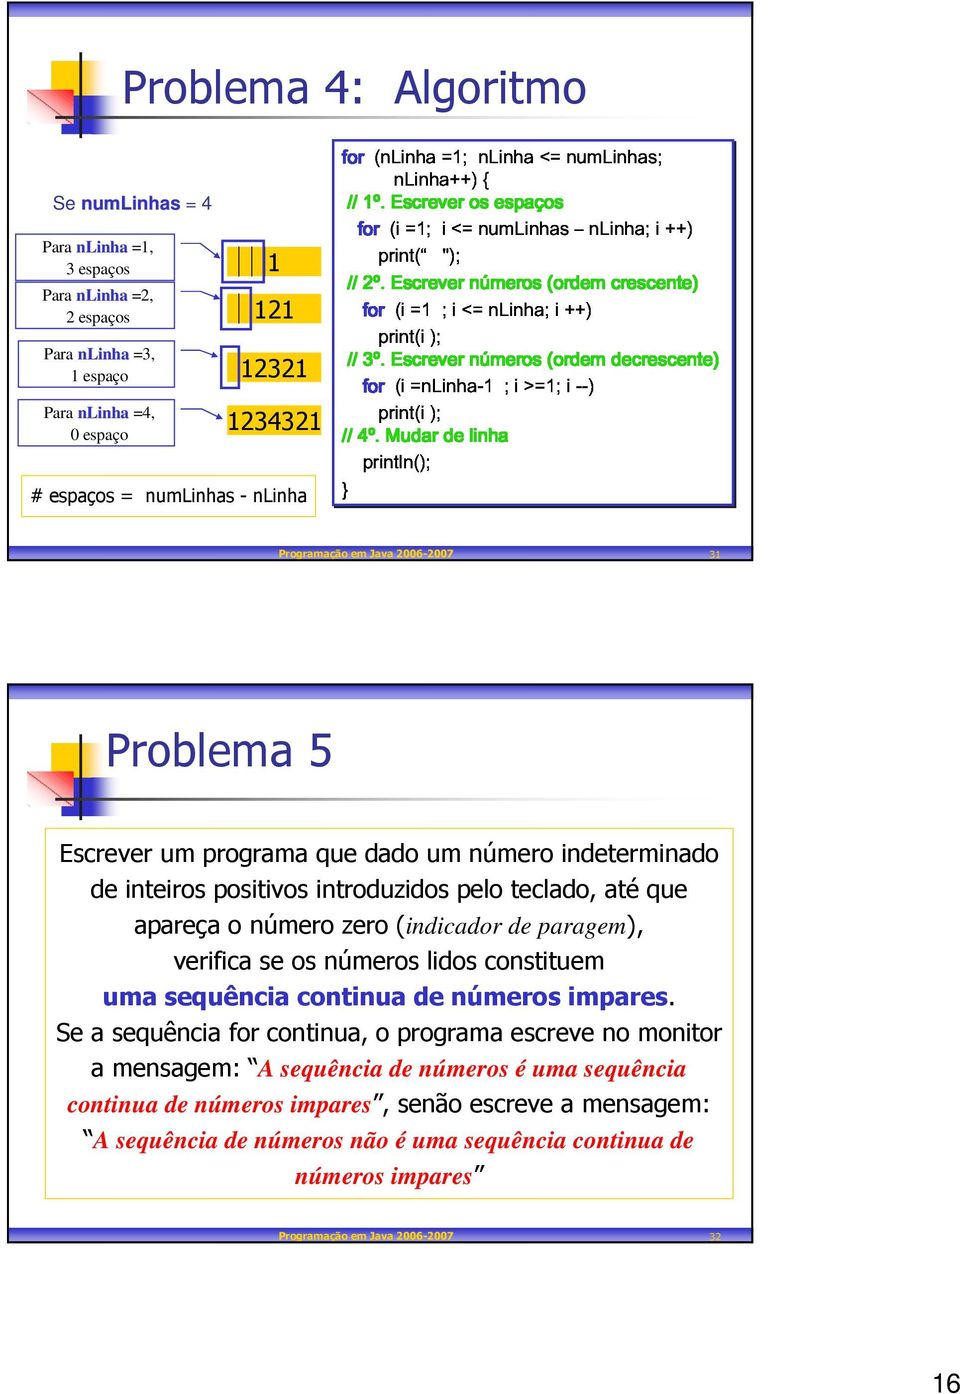 print(i); Mudar de linha 12321 1234321 Se numlinhas = 4 # espaços = numlinhas - nlinha 2print( "); // 3print(i); Programação em Java 2006-2007 31 Problema 5 Escrever um programa que dado um número